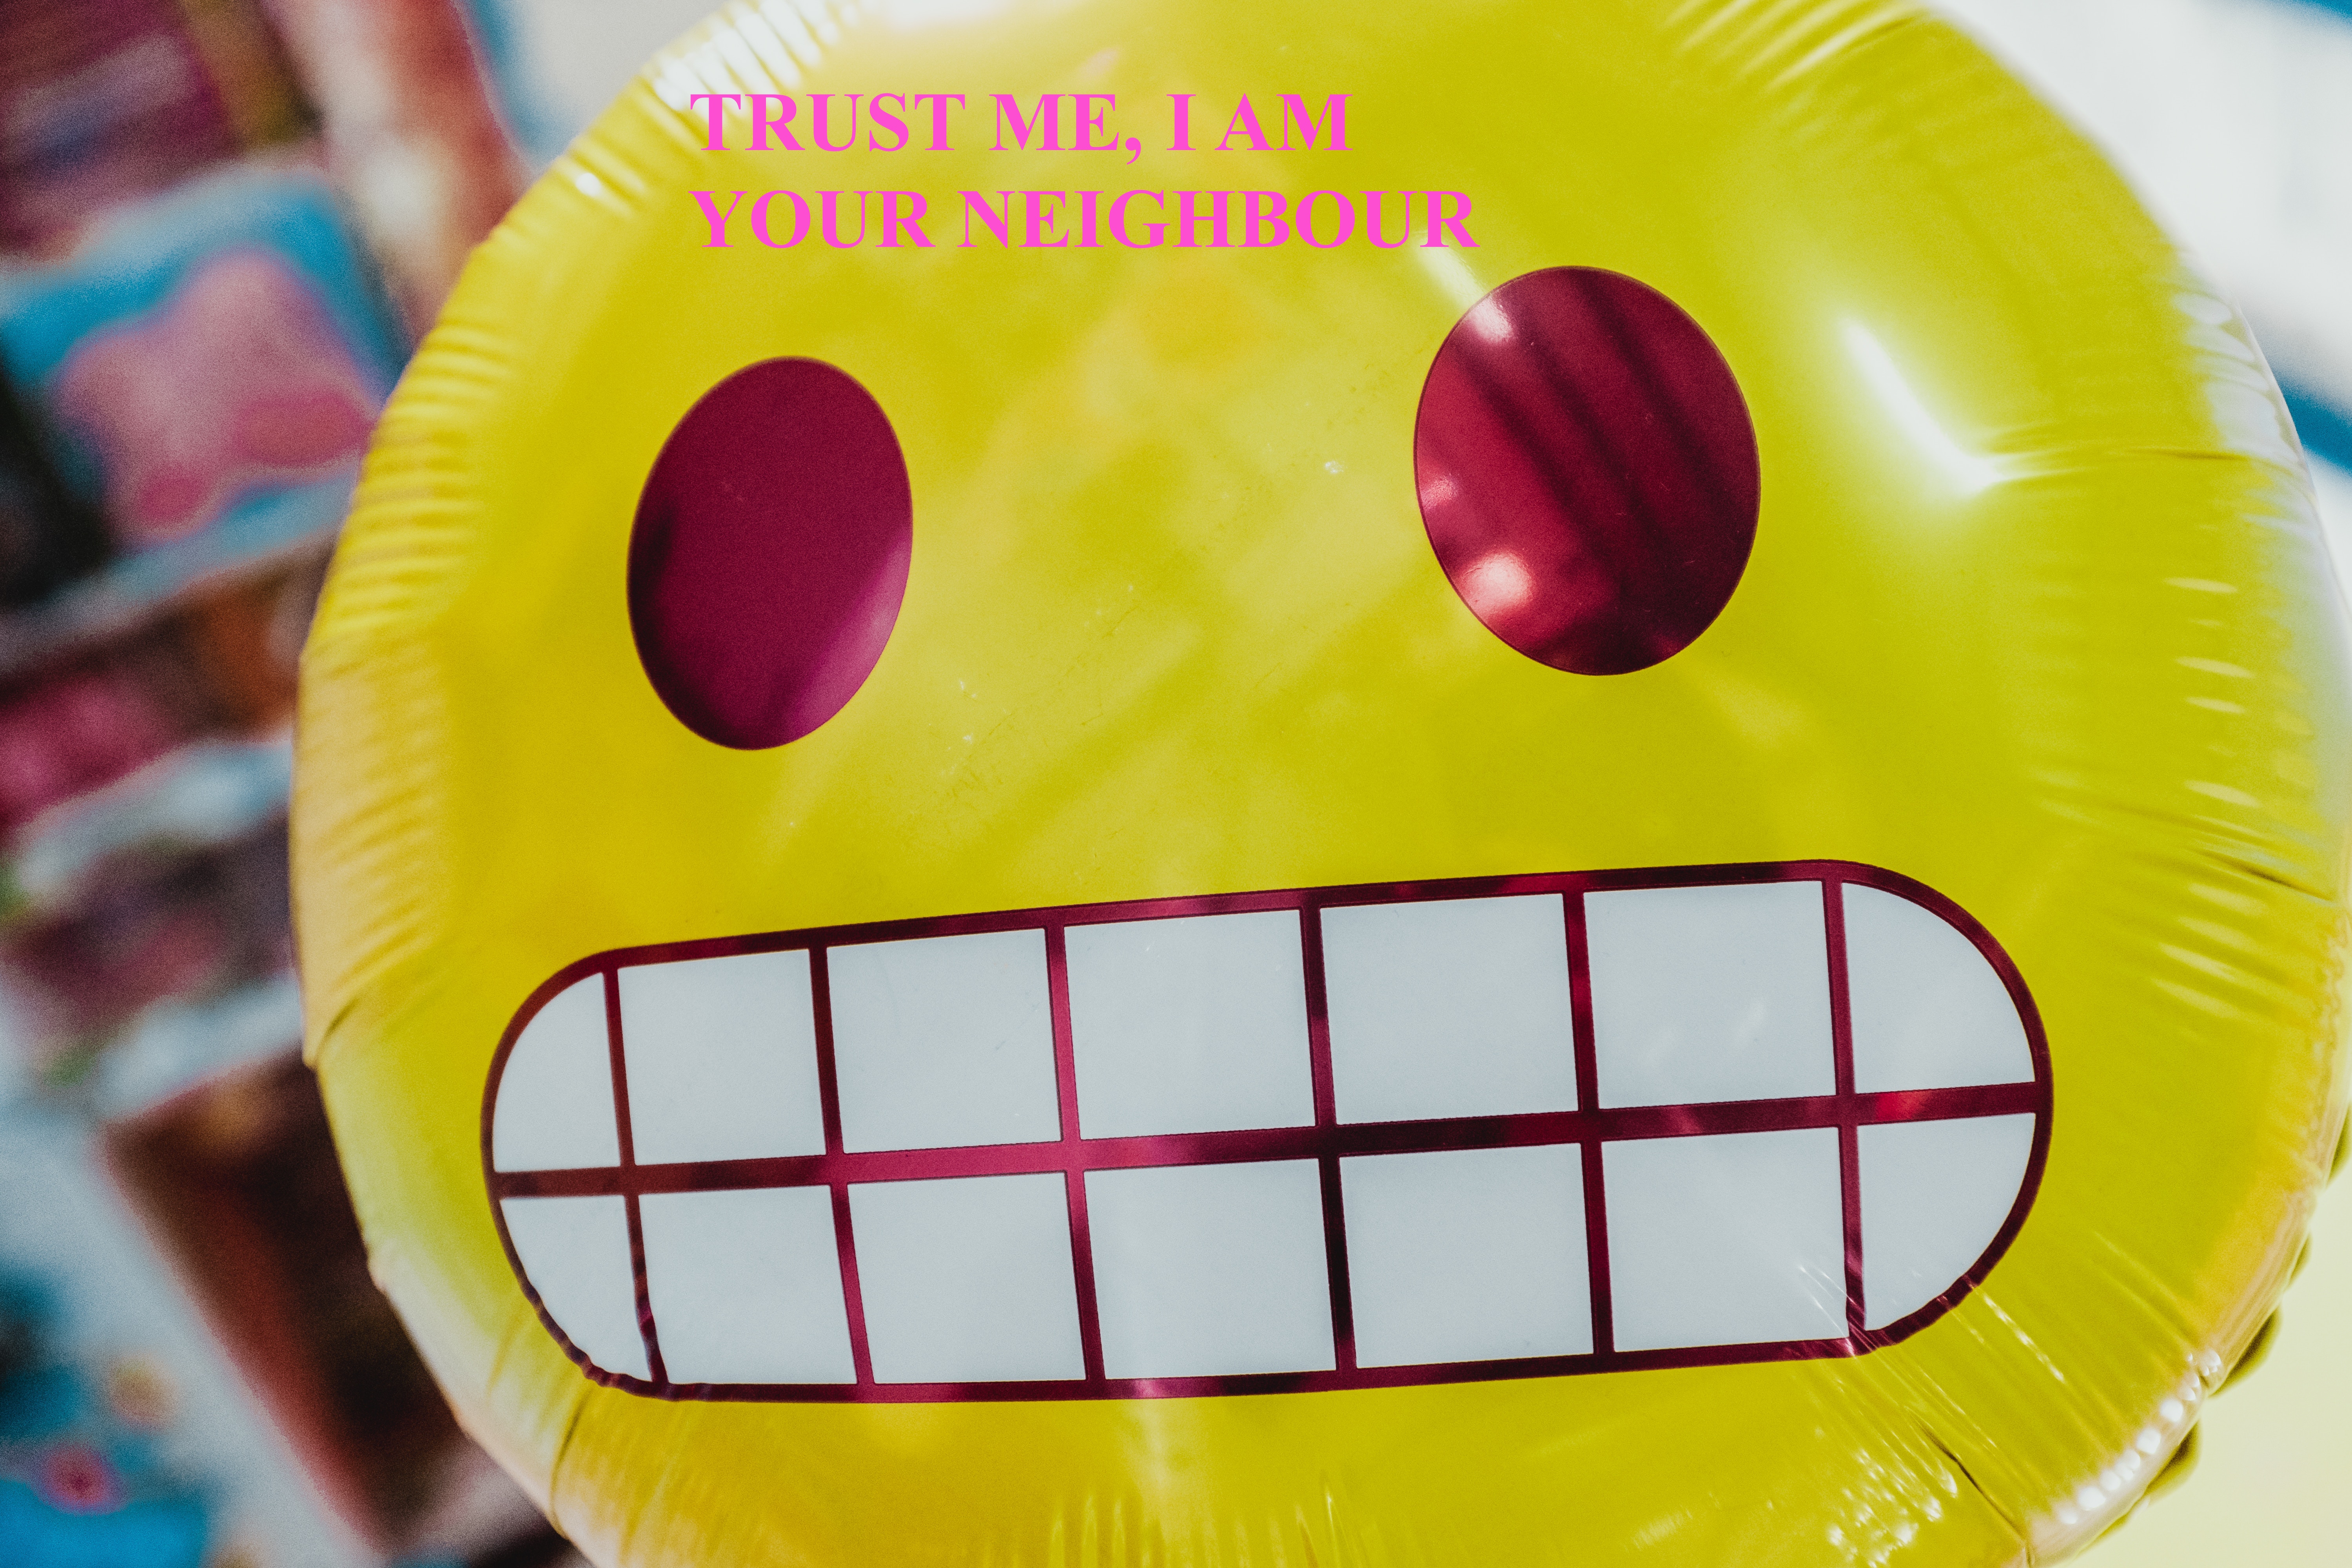 Grimacing smiley face balloon